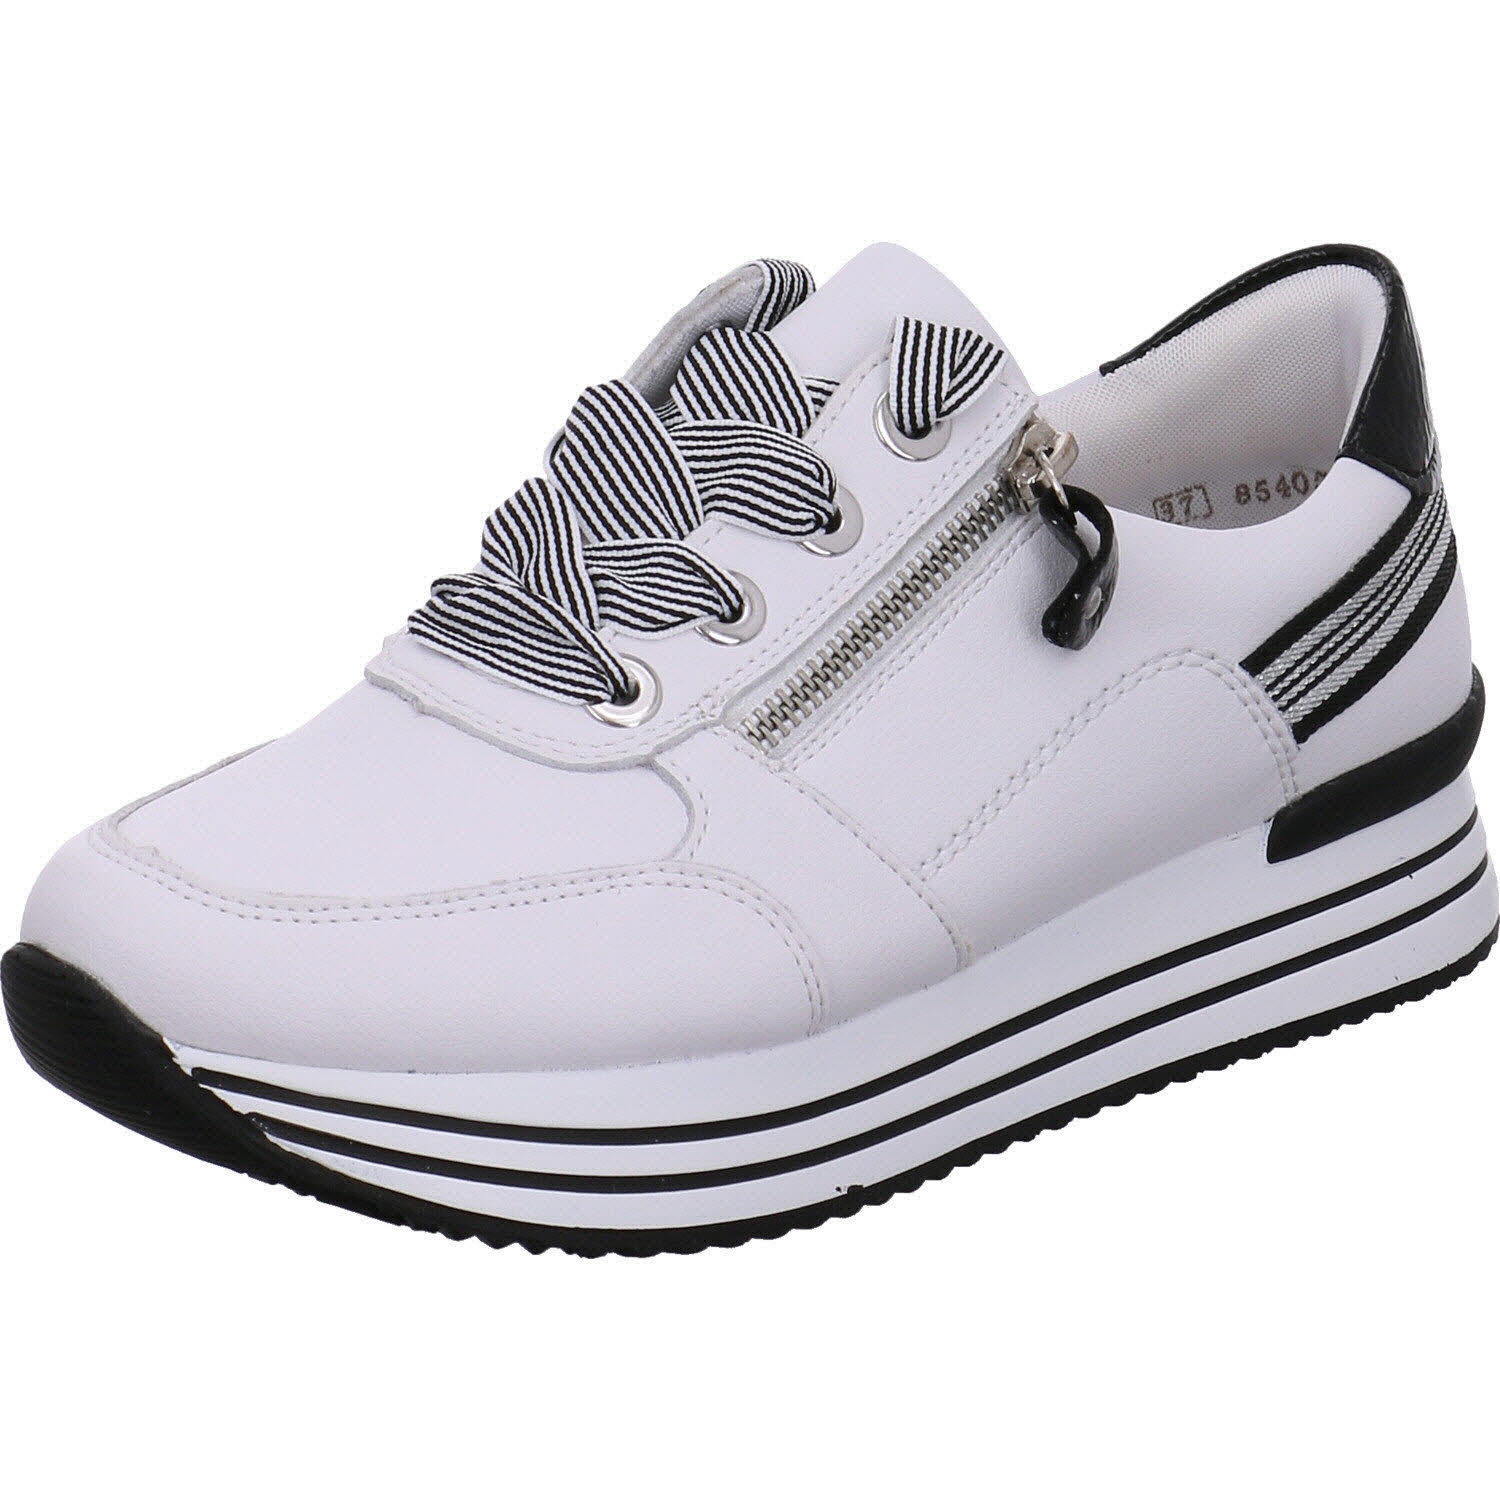 Damen Sneaker low von Remonte auch in Weiß erhältlich